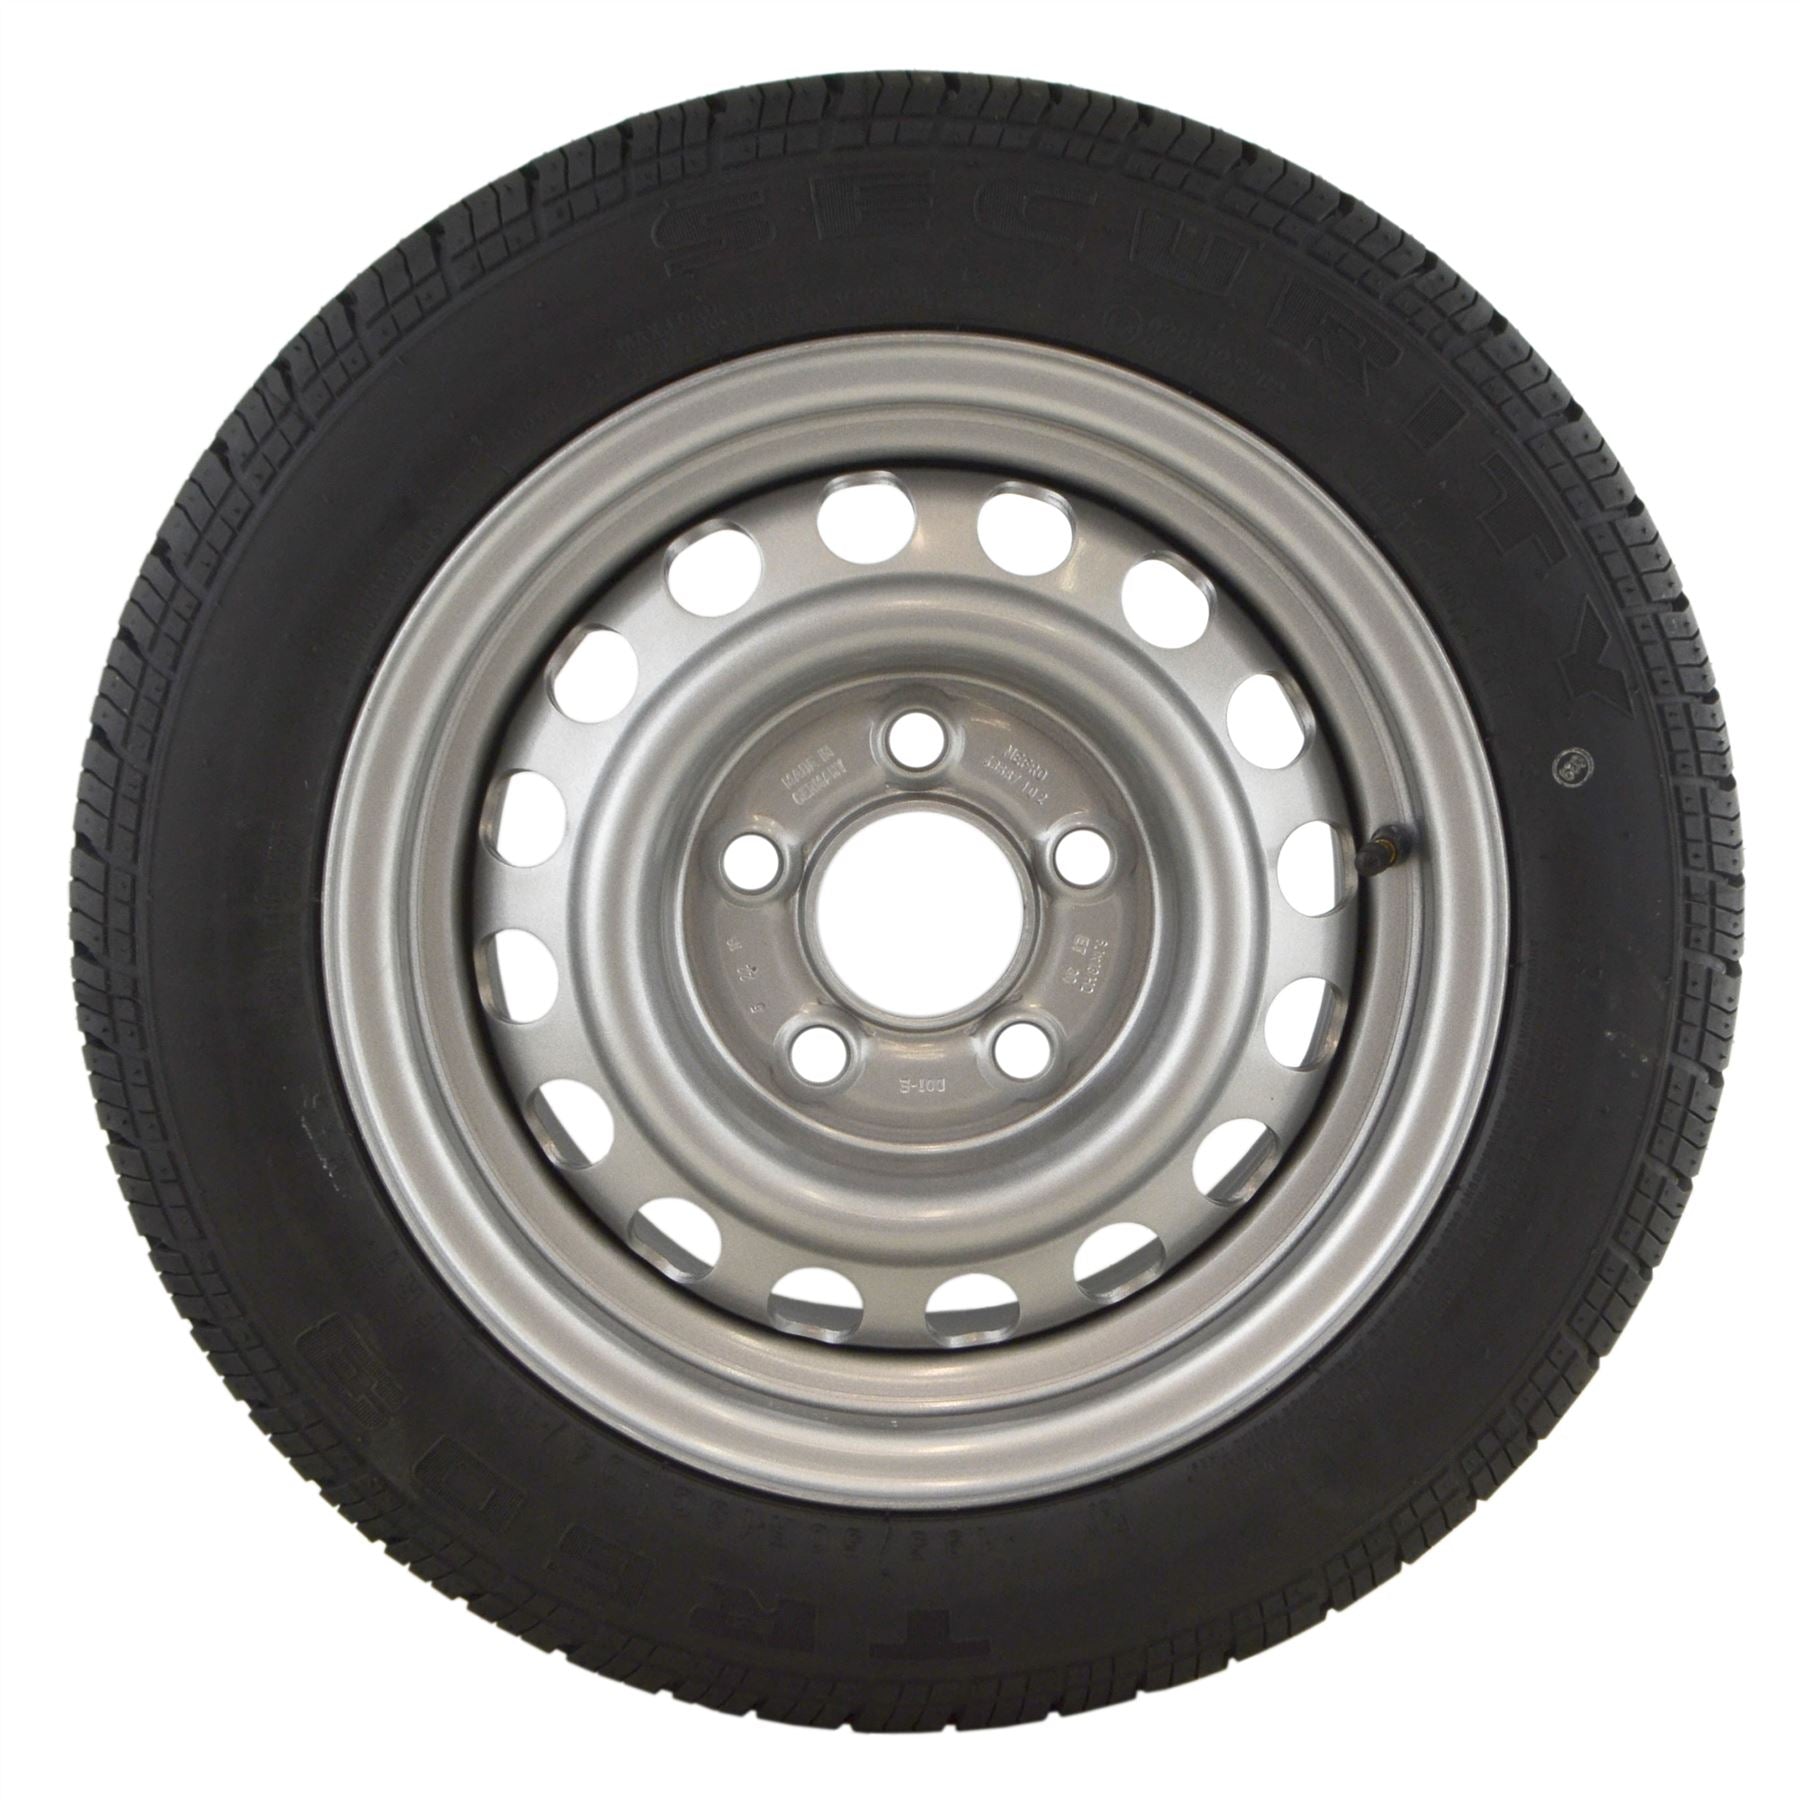 195/50 R13C Tyre & Wheel Rim 5 Stud 104/101N 112mm PCD TRSP45